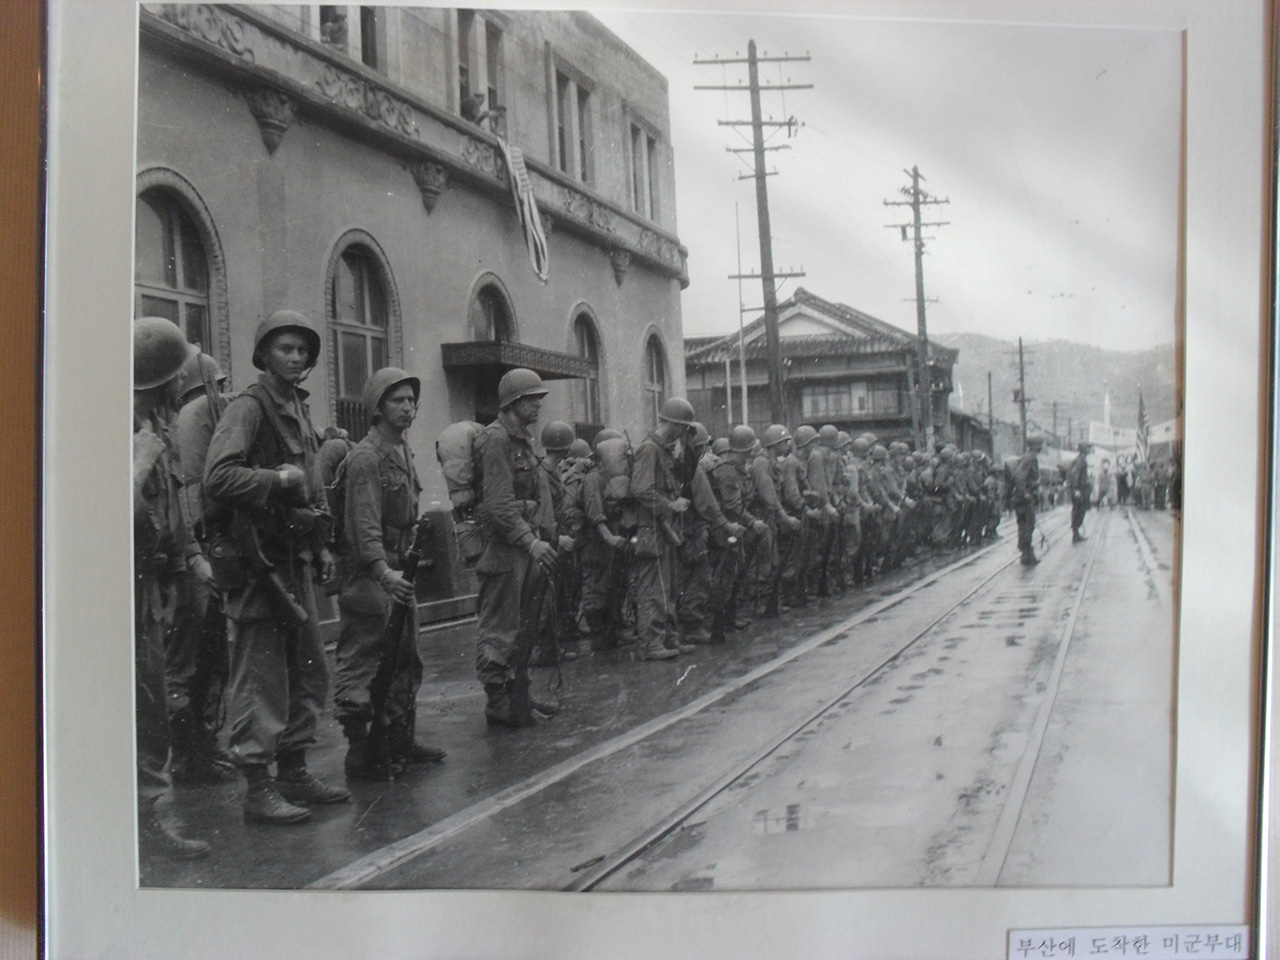 한국전쟁 당시 부산에 상륙한 미군. 부산시 서구 부민동의 임시수도기념관에서 찍은 사진. 